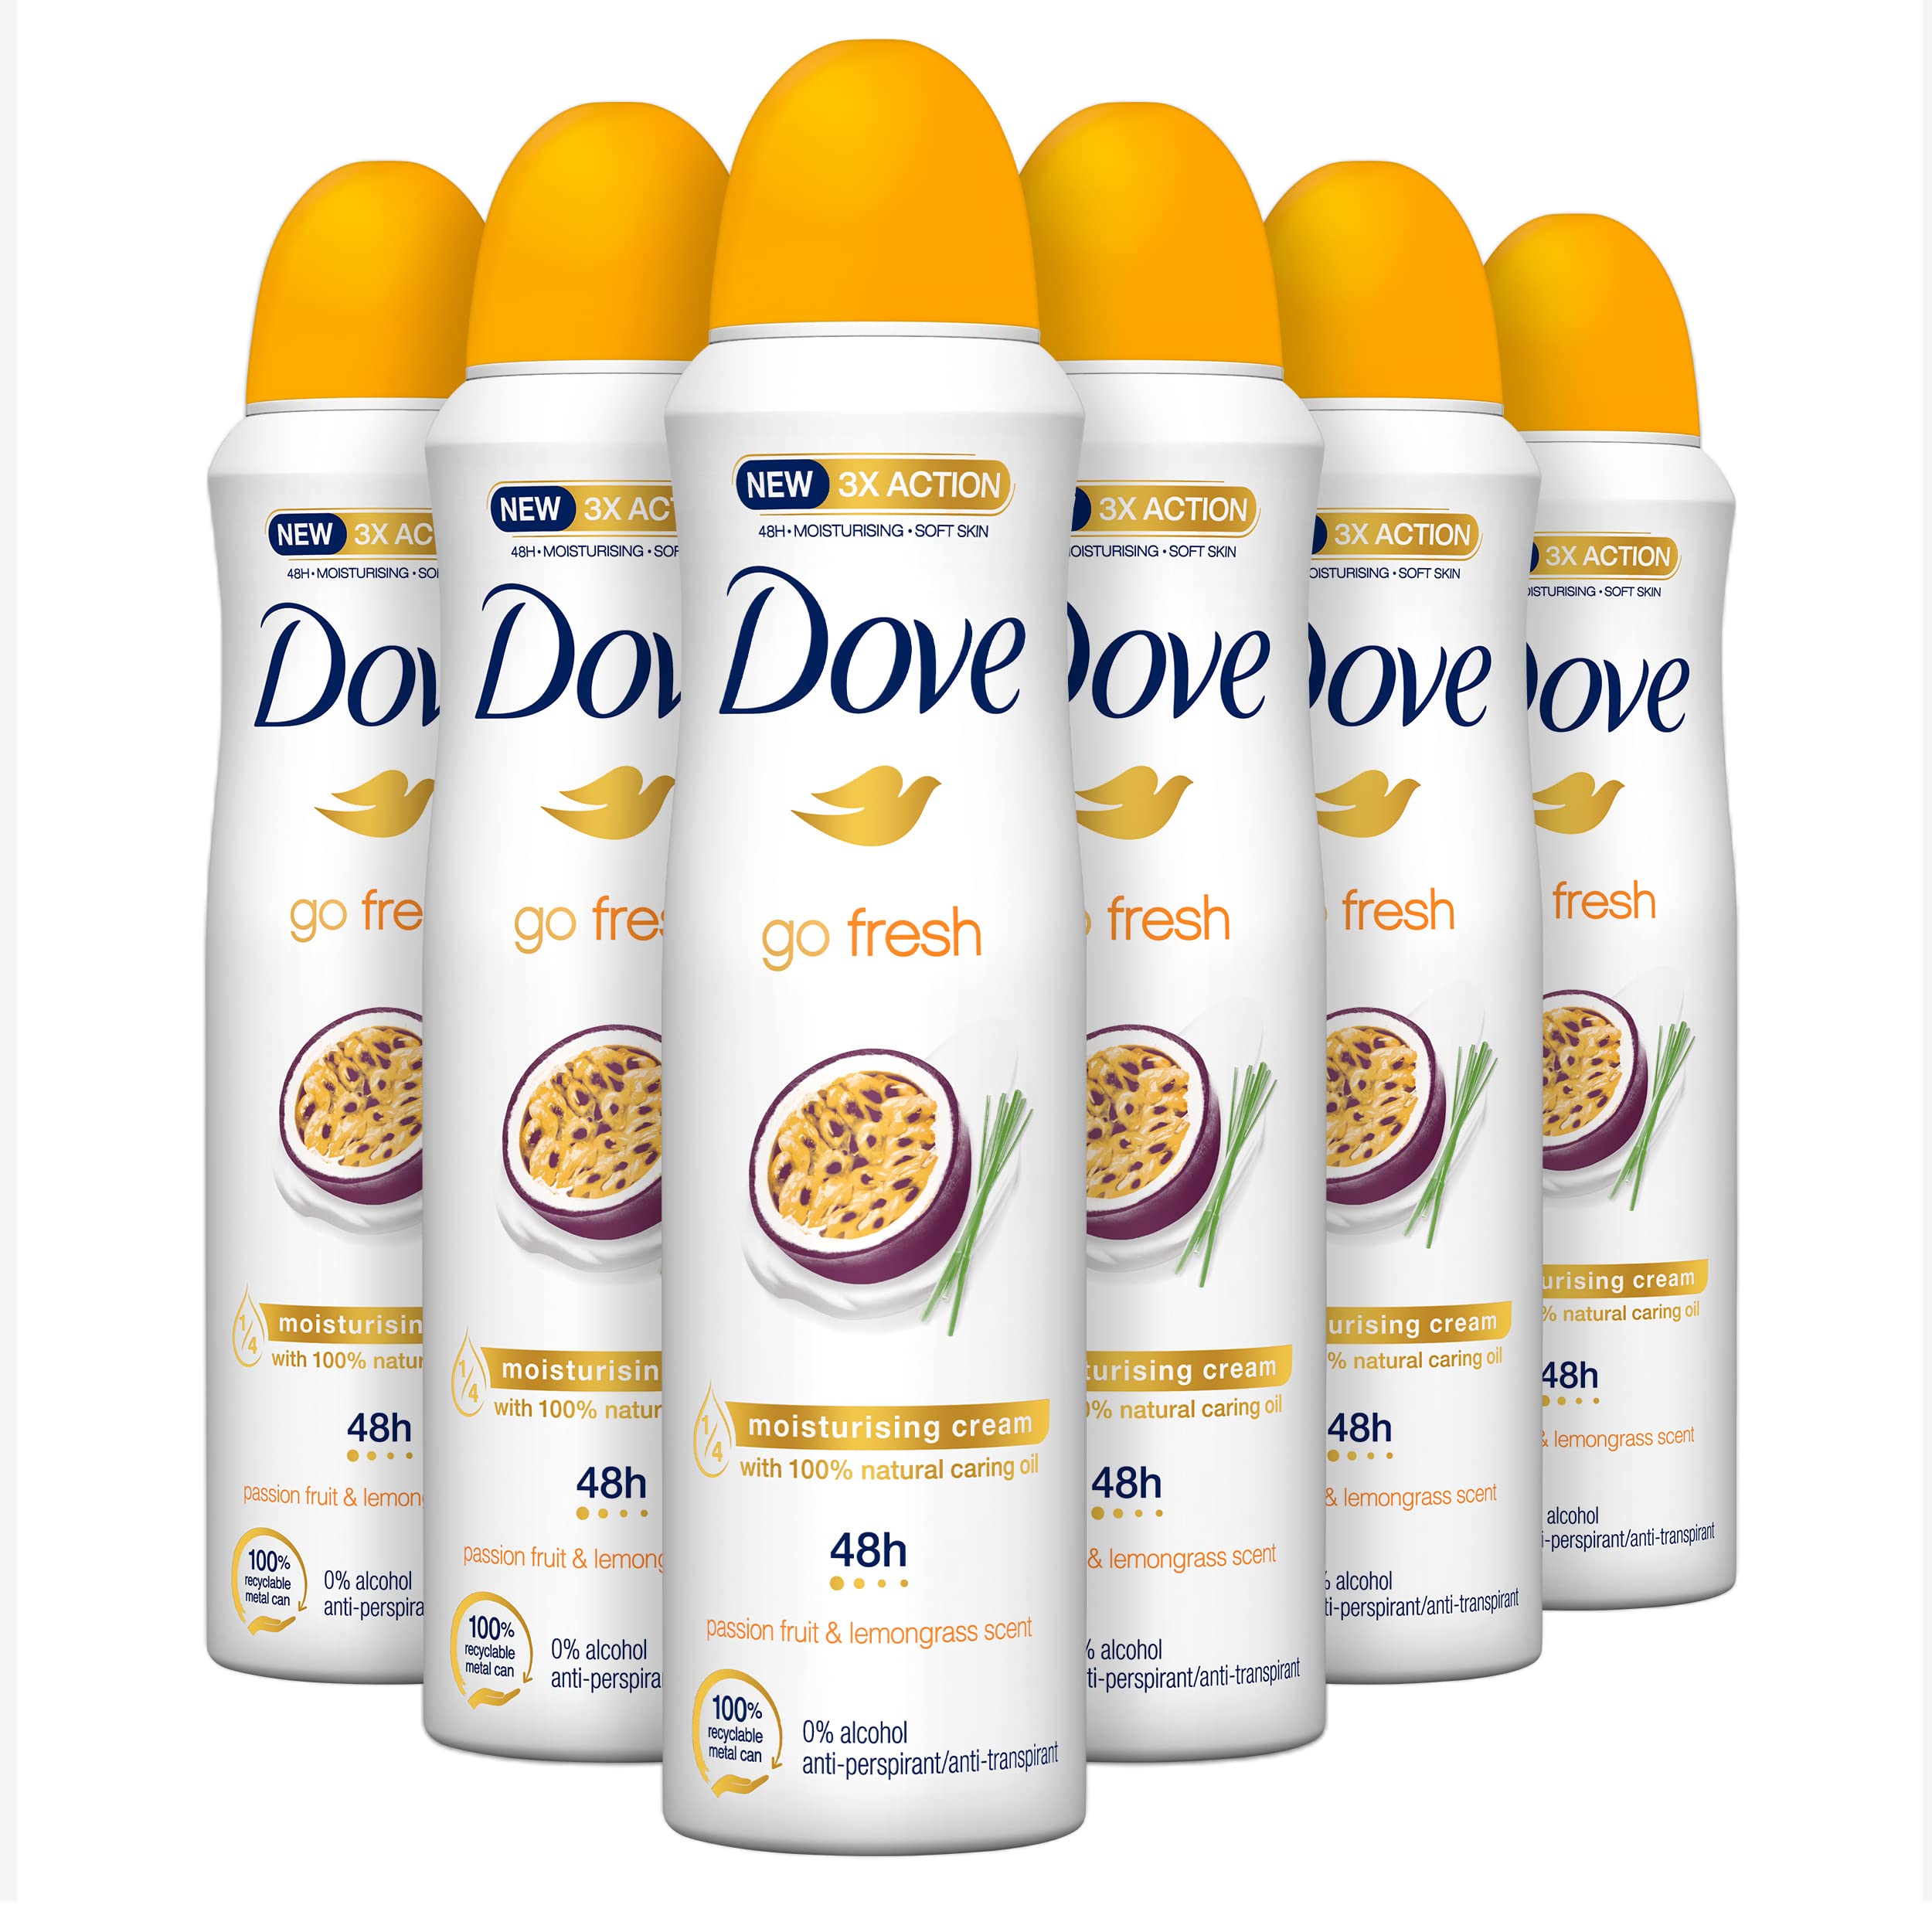 Dove, Go Fresh Deodorant Spray Passion Fruit, mit 1/4 Feuchtigkeitscreme, Antitranspirant, ohne Alkohol, trockene Haut bis zu 48 Stunden, frischer Duft, Deodorant für Damen und Herren, 6 Stück à 150